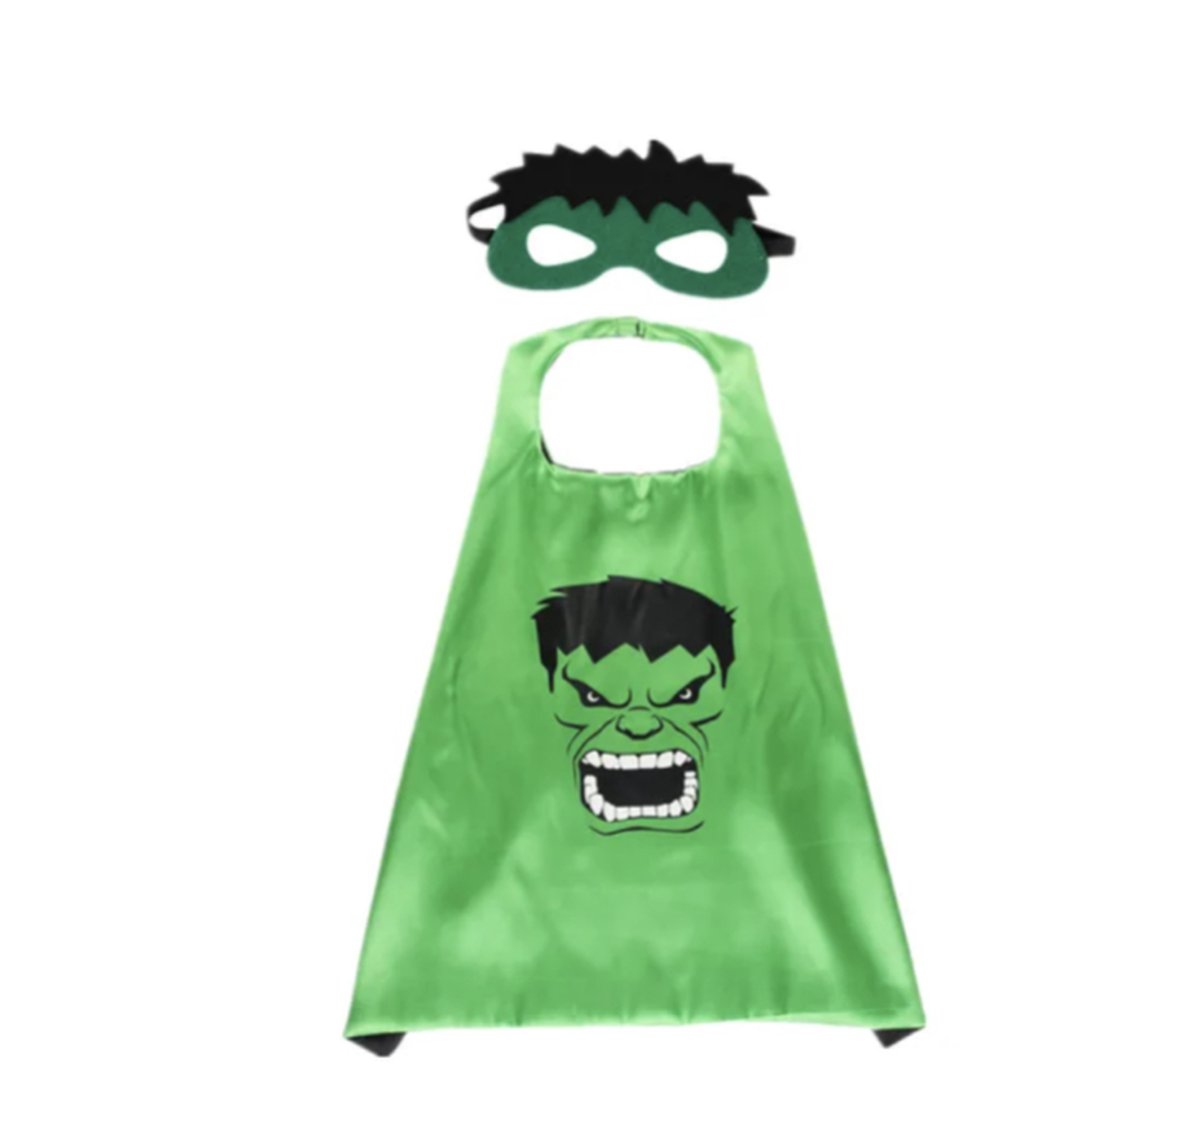 Superheldenkostuum Incredible Groene Hulk cape + masker - Hulk - Groene Hulk - Hulk Smash - Avengers - Bruce Banner - Cadeau - Kado - Kerst - Sinterklaas - Verjaardag - Verkleedpartij - Kostuum -